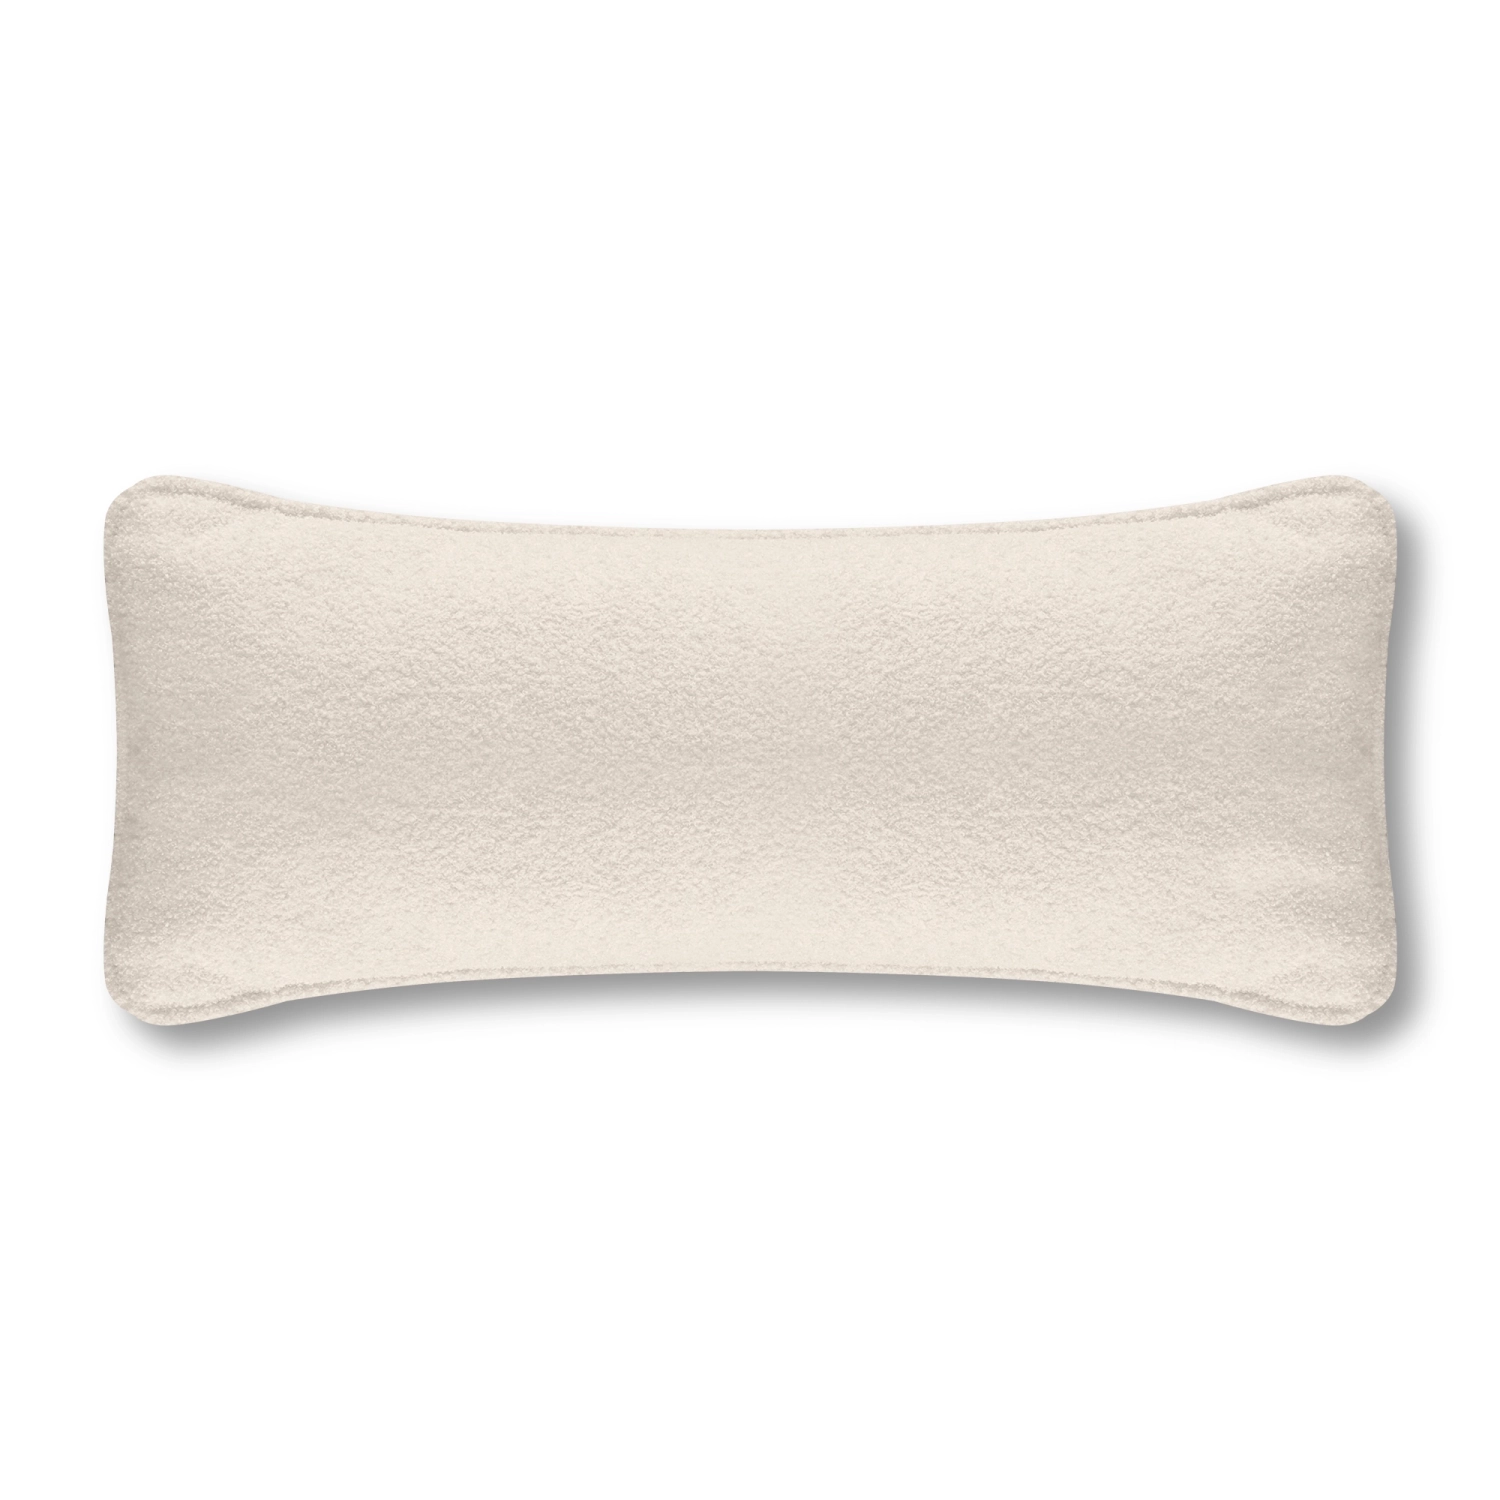 Luss poduszka dekoracyjna prostokątna z tkaniny boucle, 60x30 cm